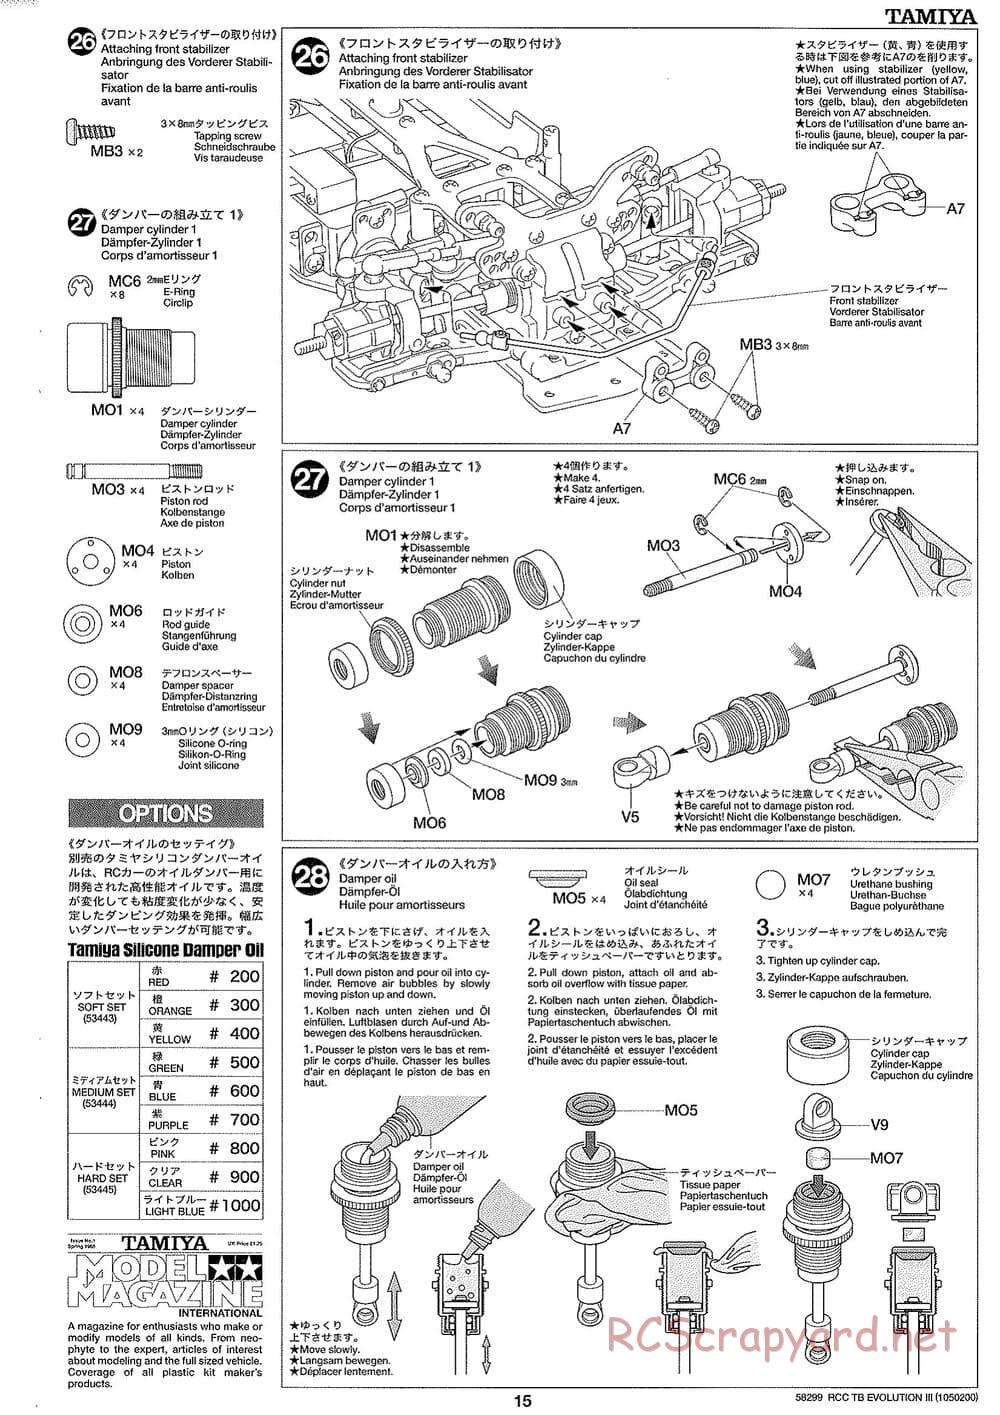 Tamiya - TB Evolution III Chassis - Manual - Page 16